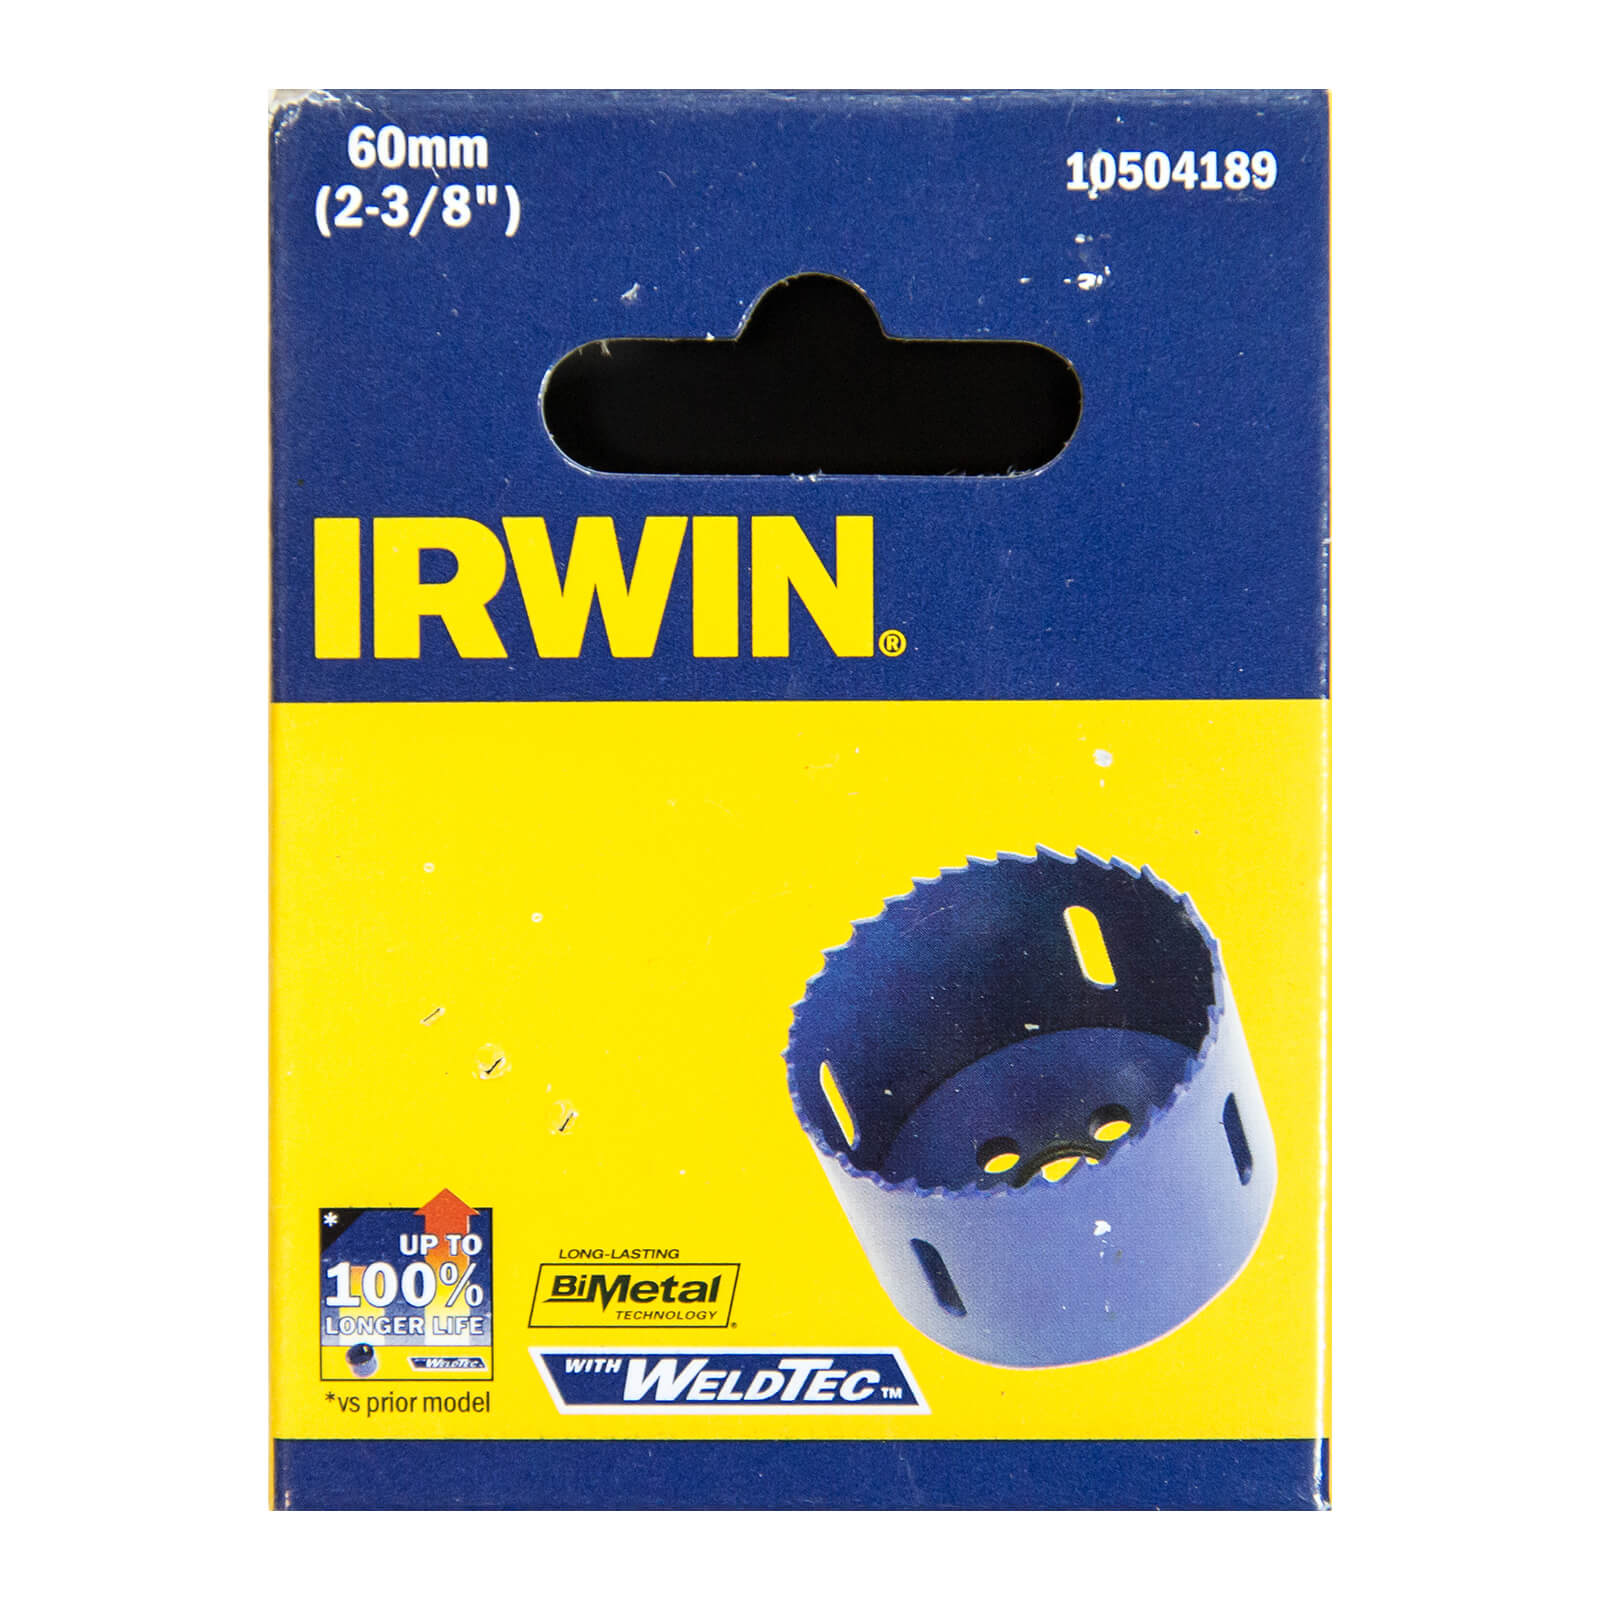 IRWIN Bi-Metal Hole Saw - 60mm